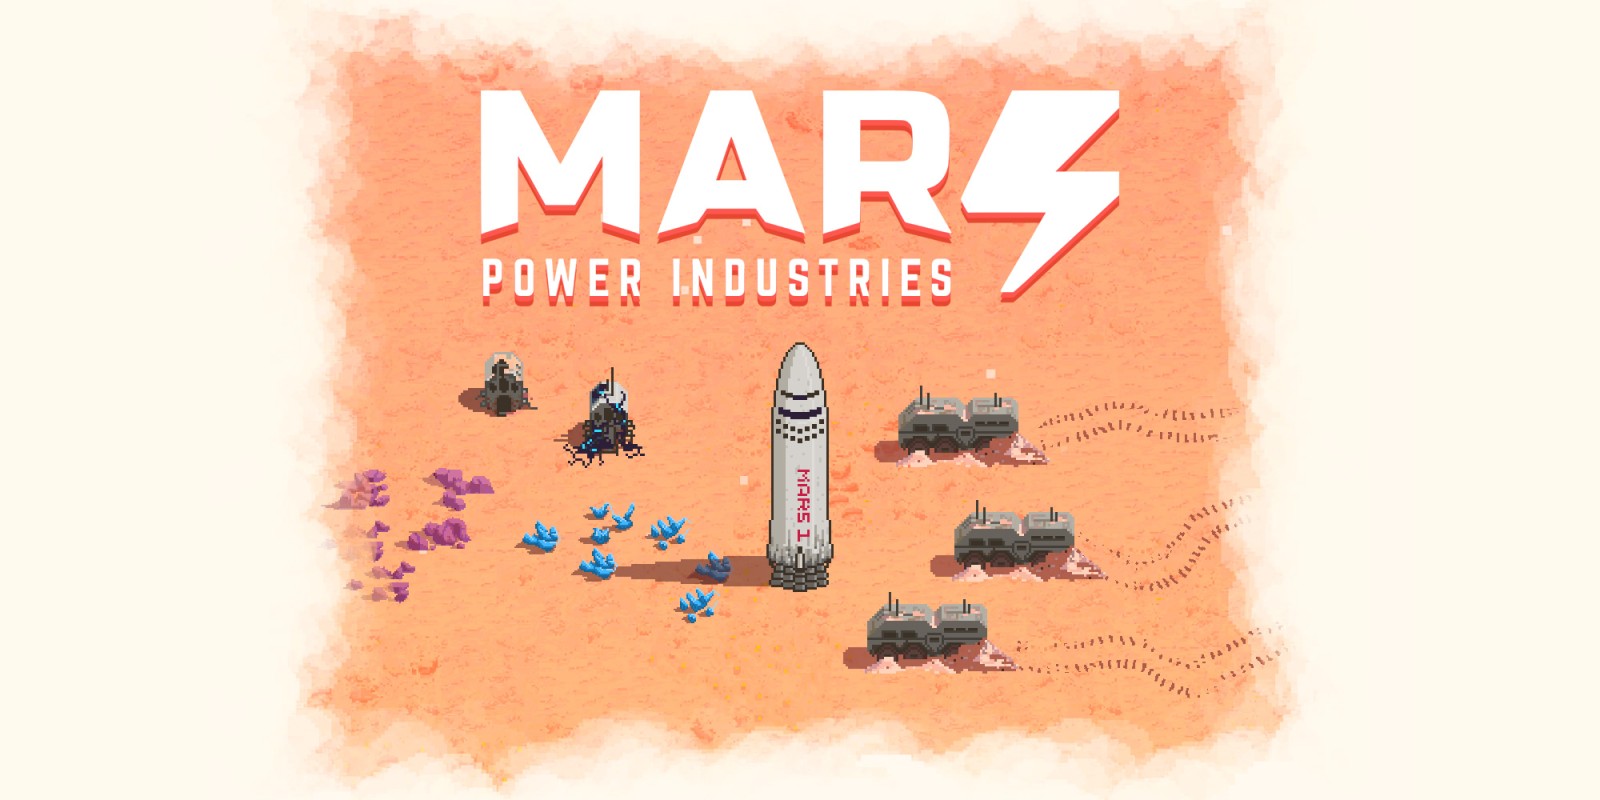 Mars Power Industries